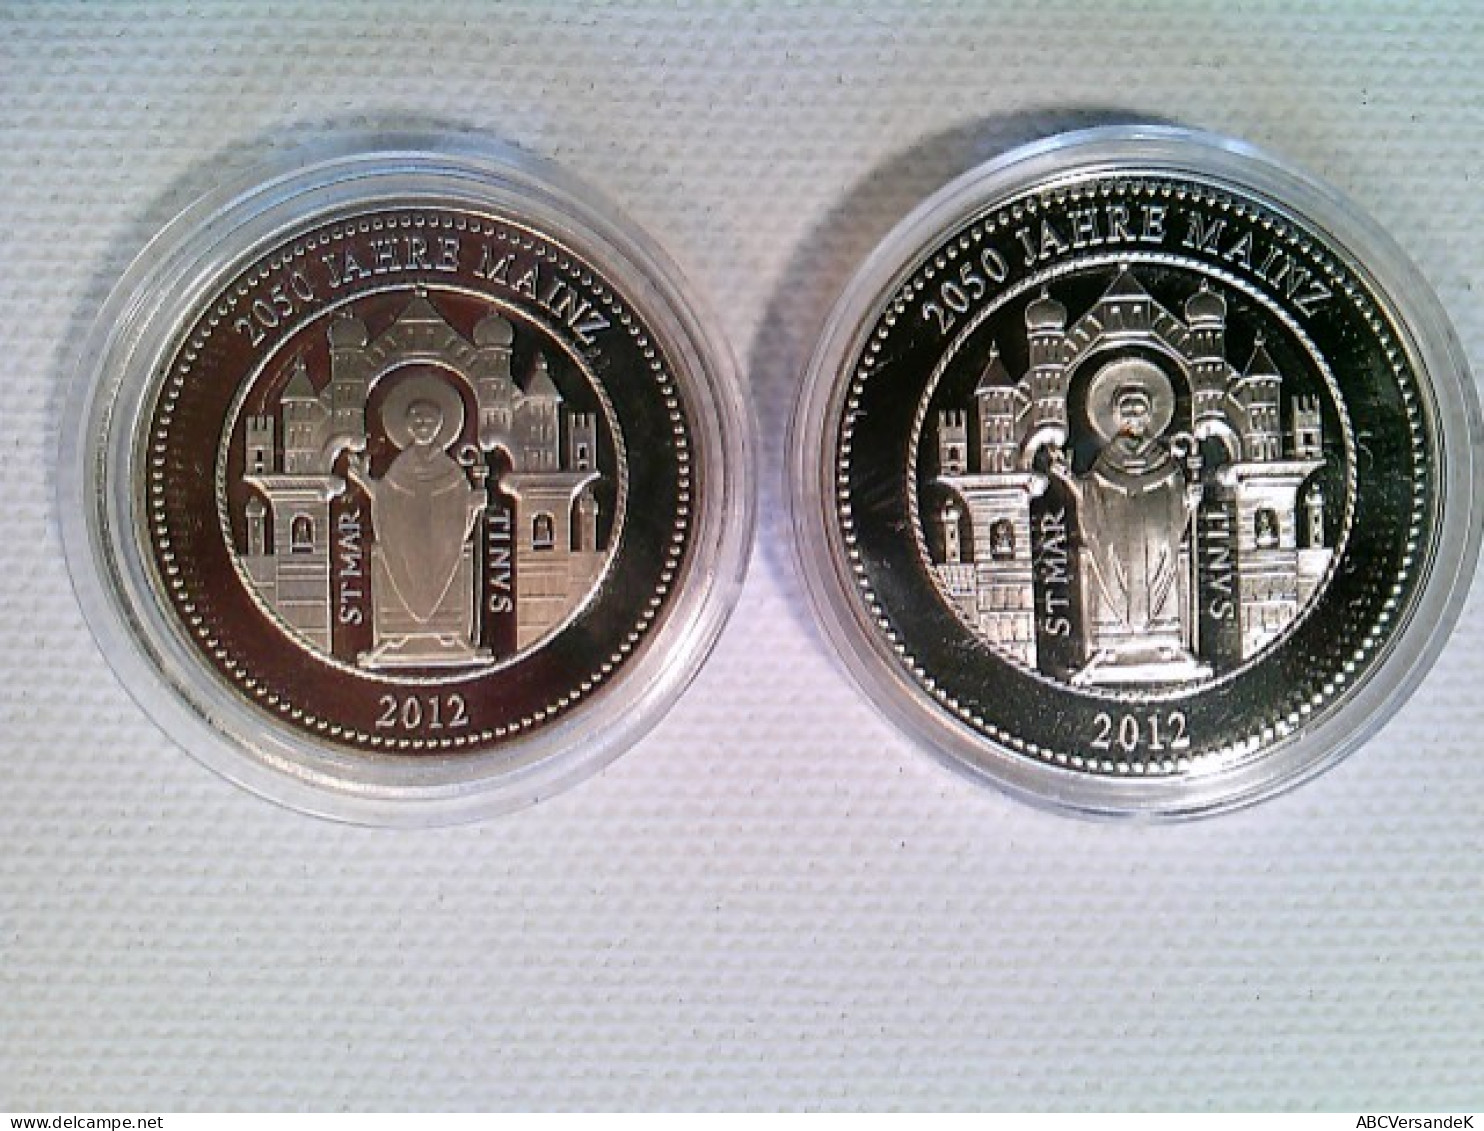 Münze/Medaille, 2x  2050 Jahre Mainz 2012, Mainzer Dom, Domweihe 1009, Konvolut - Numismatiek